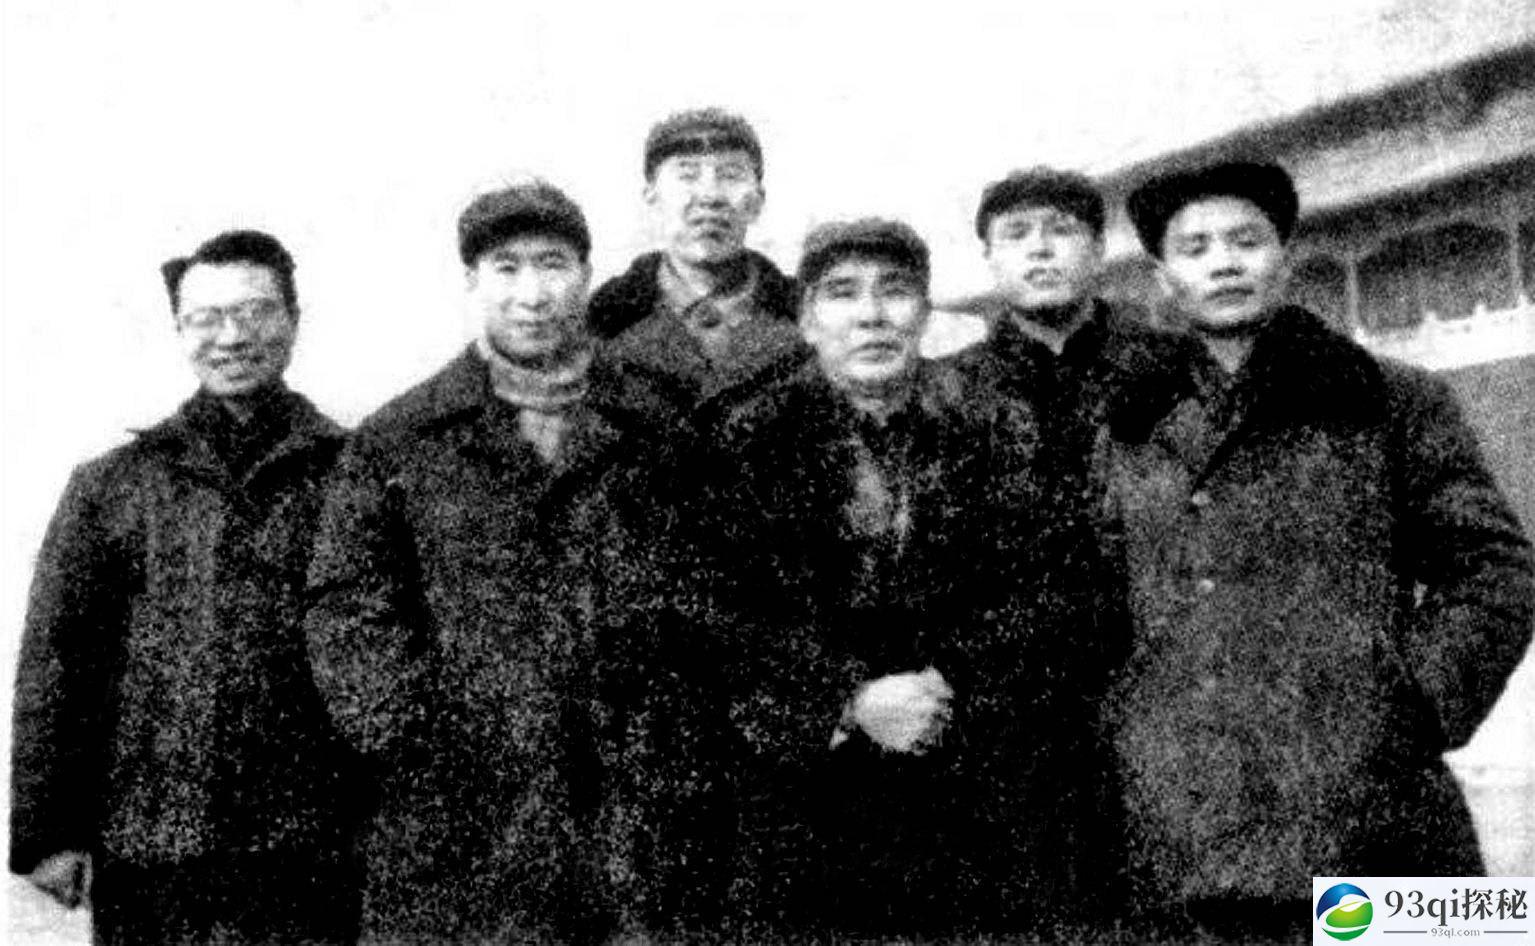 1954年毛泽东盛赞贺子珍之兄获哪三个“第一”?